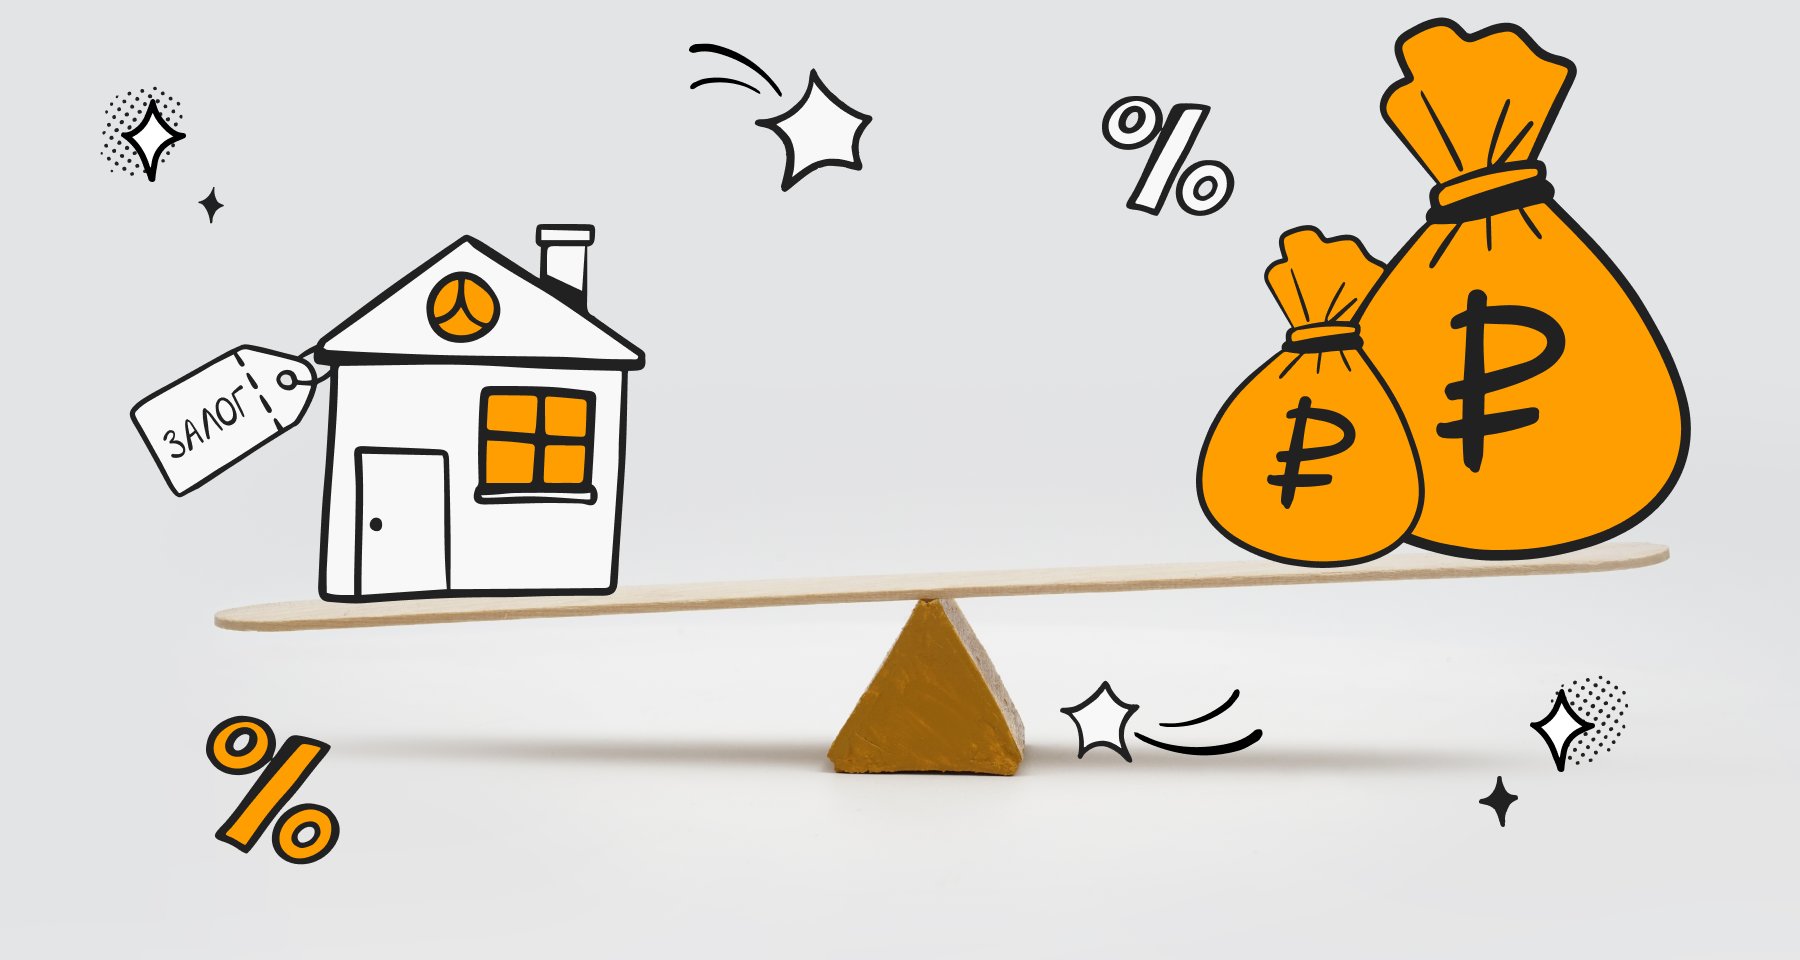 Кредит под залог недвижимости: в чем суть, стоит ли оформлять и может ли он  стать альтернативой ипотеке | Банки.ру